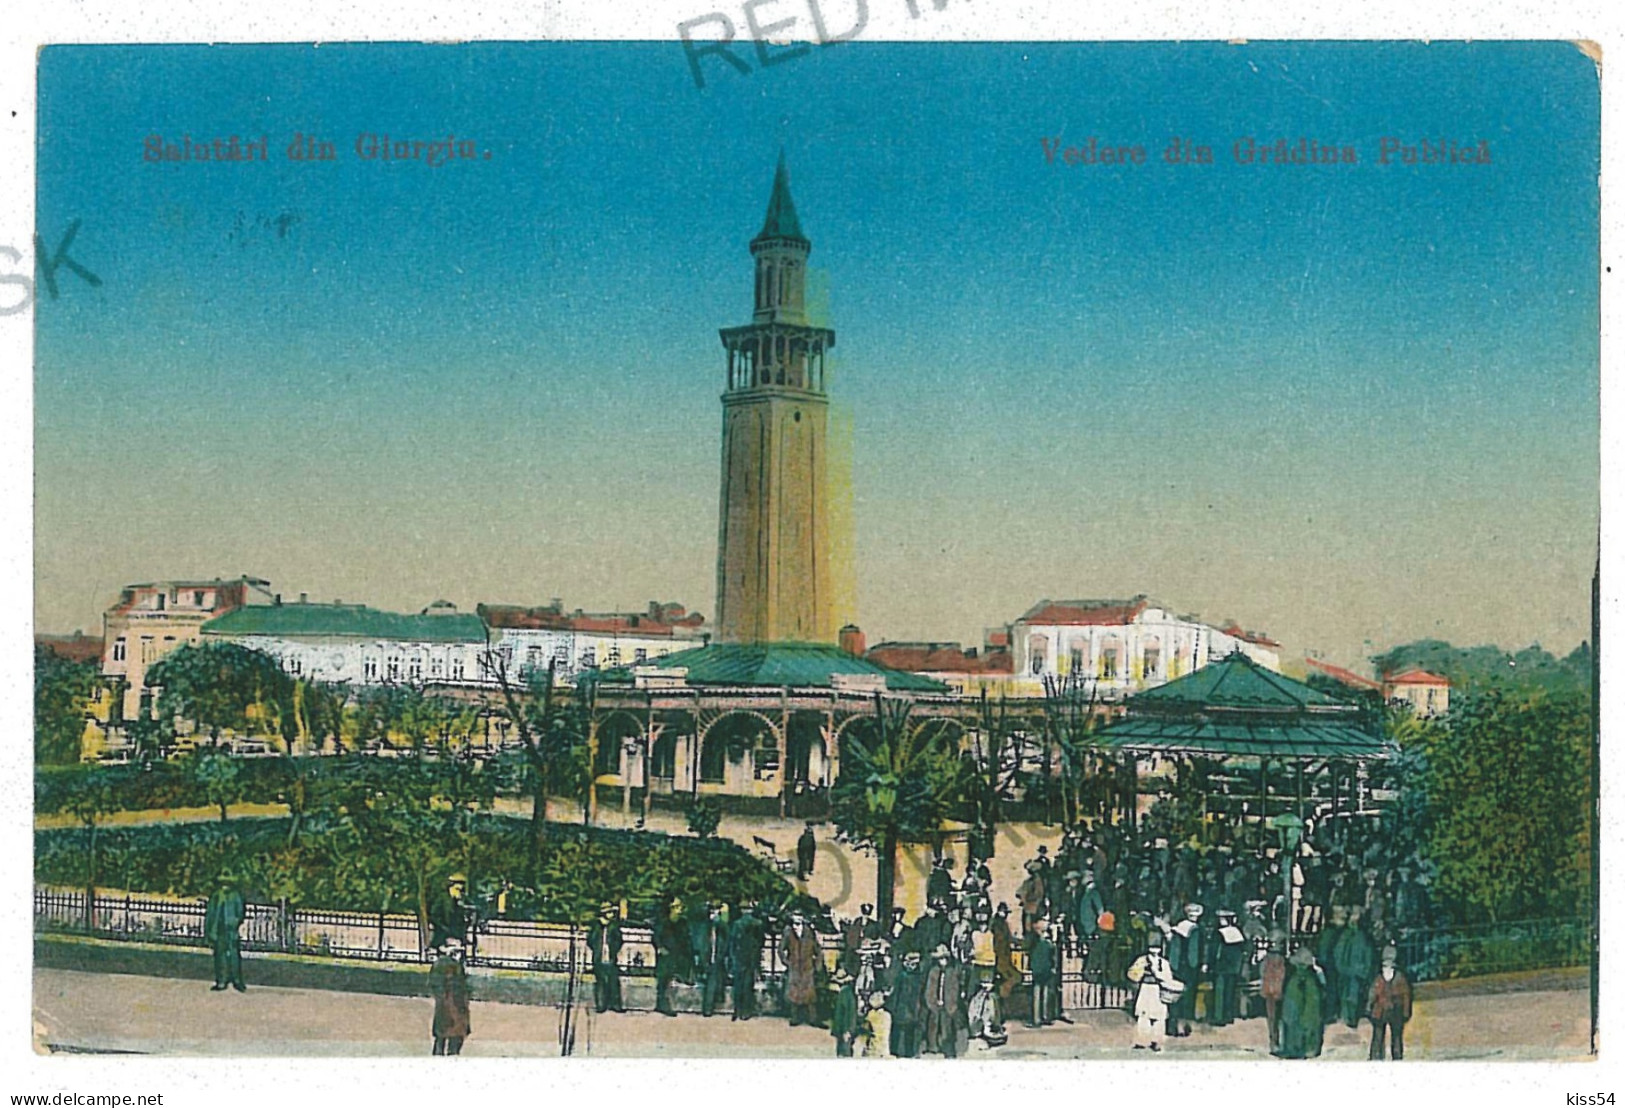 RO 36 - 10393 GIURGIU, Firemen Tower, Romania - Old Postcard - Used - 1923 - Romania